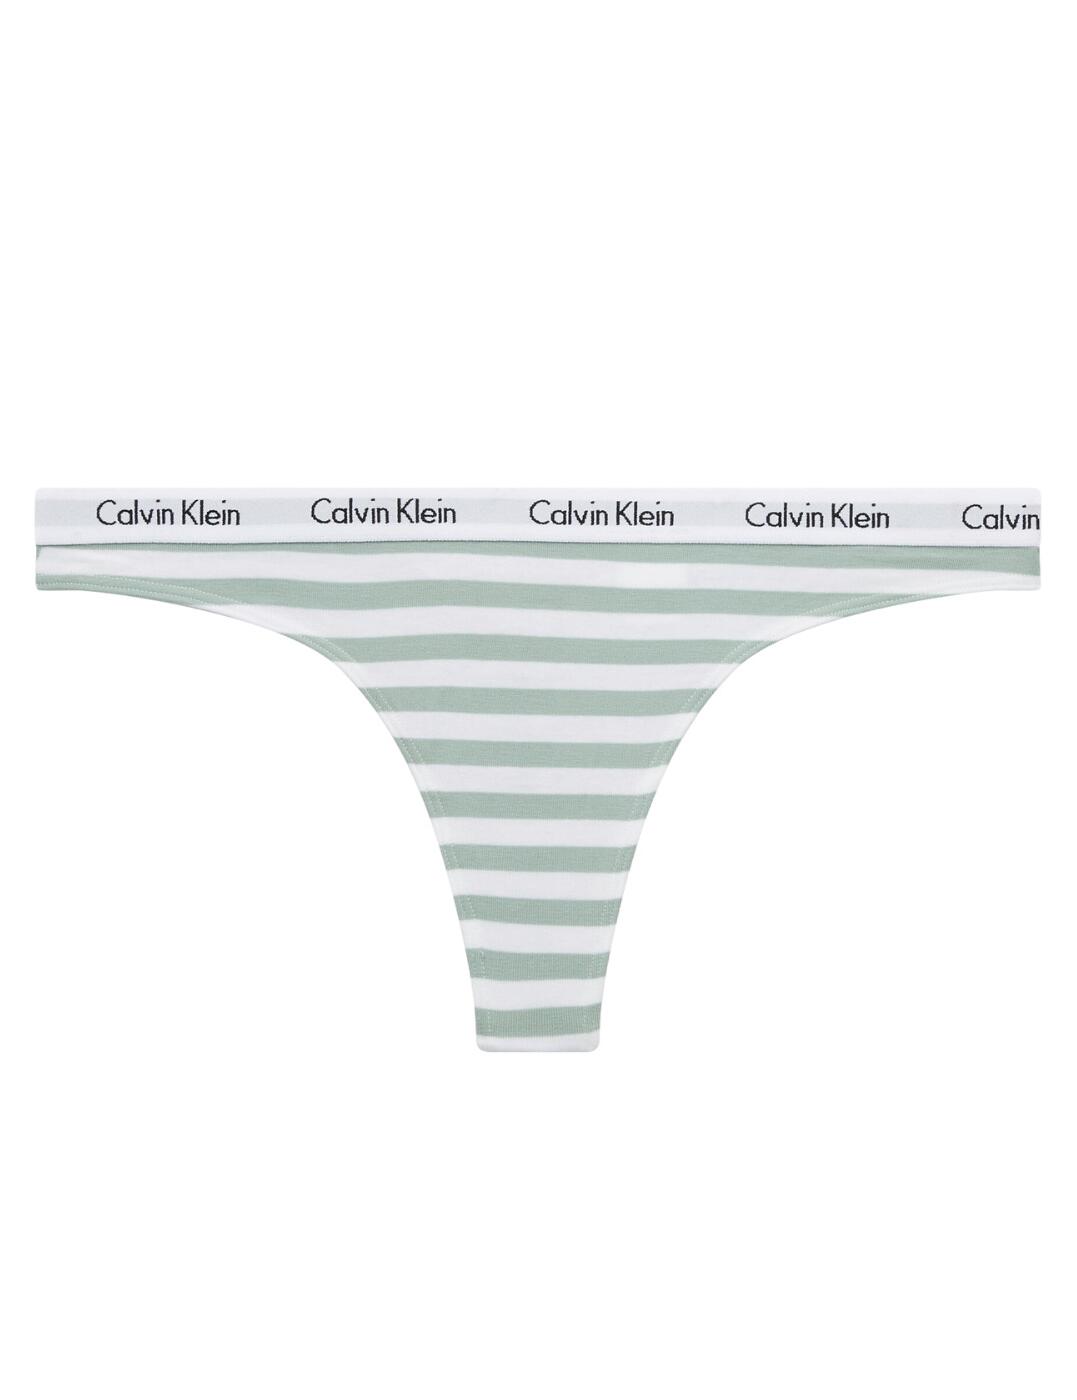 Calvin Klein Carousel Thong 0000D1617E Womens Lingerie Thongs